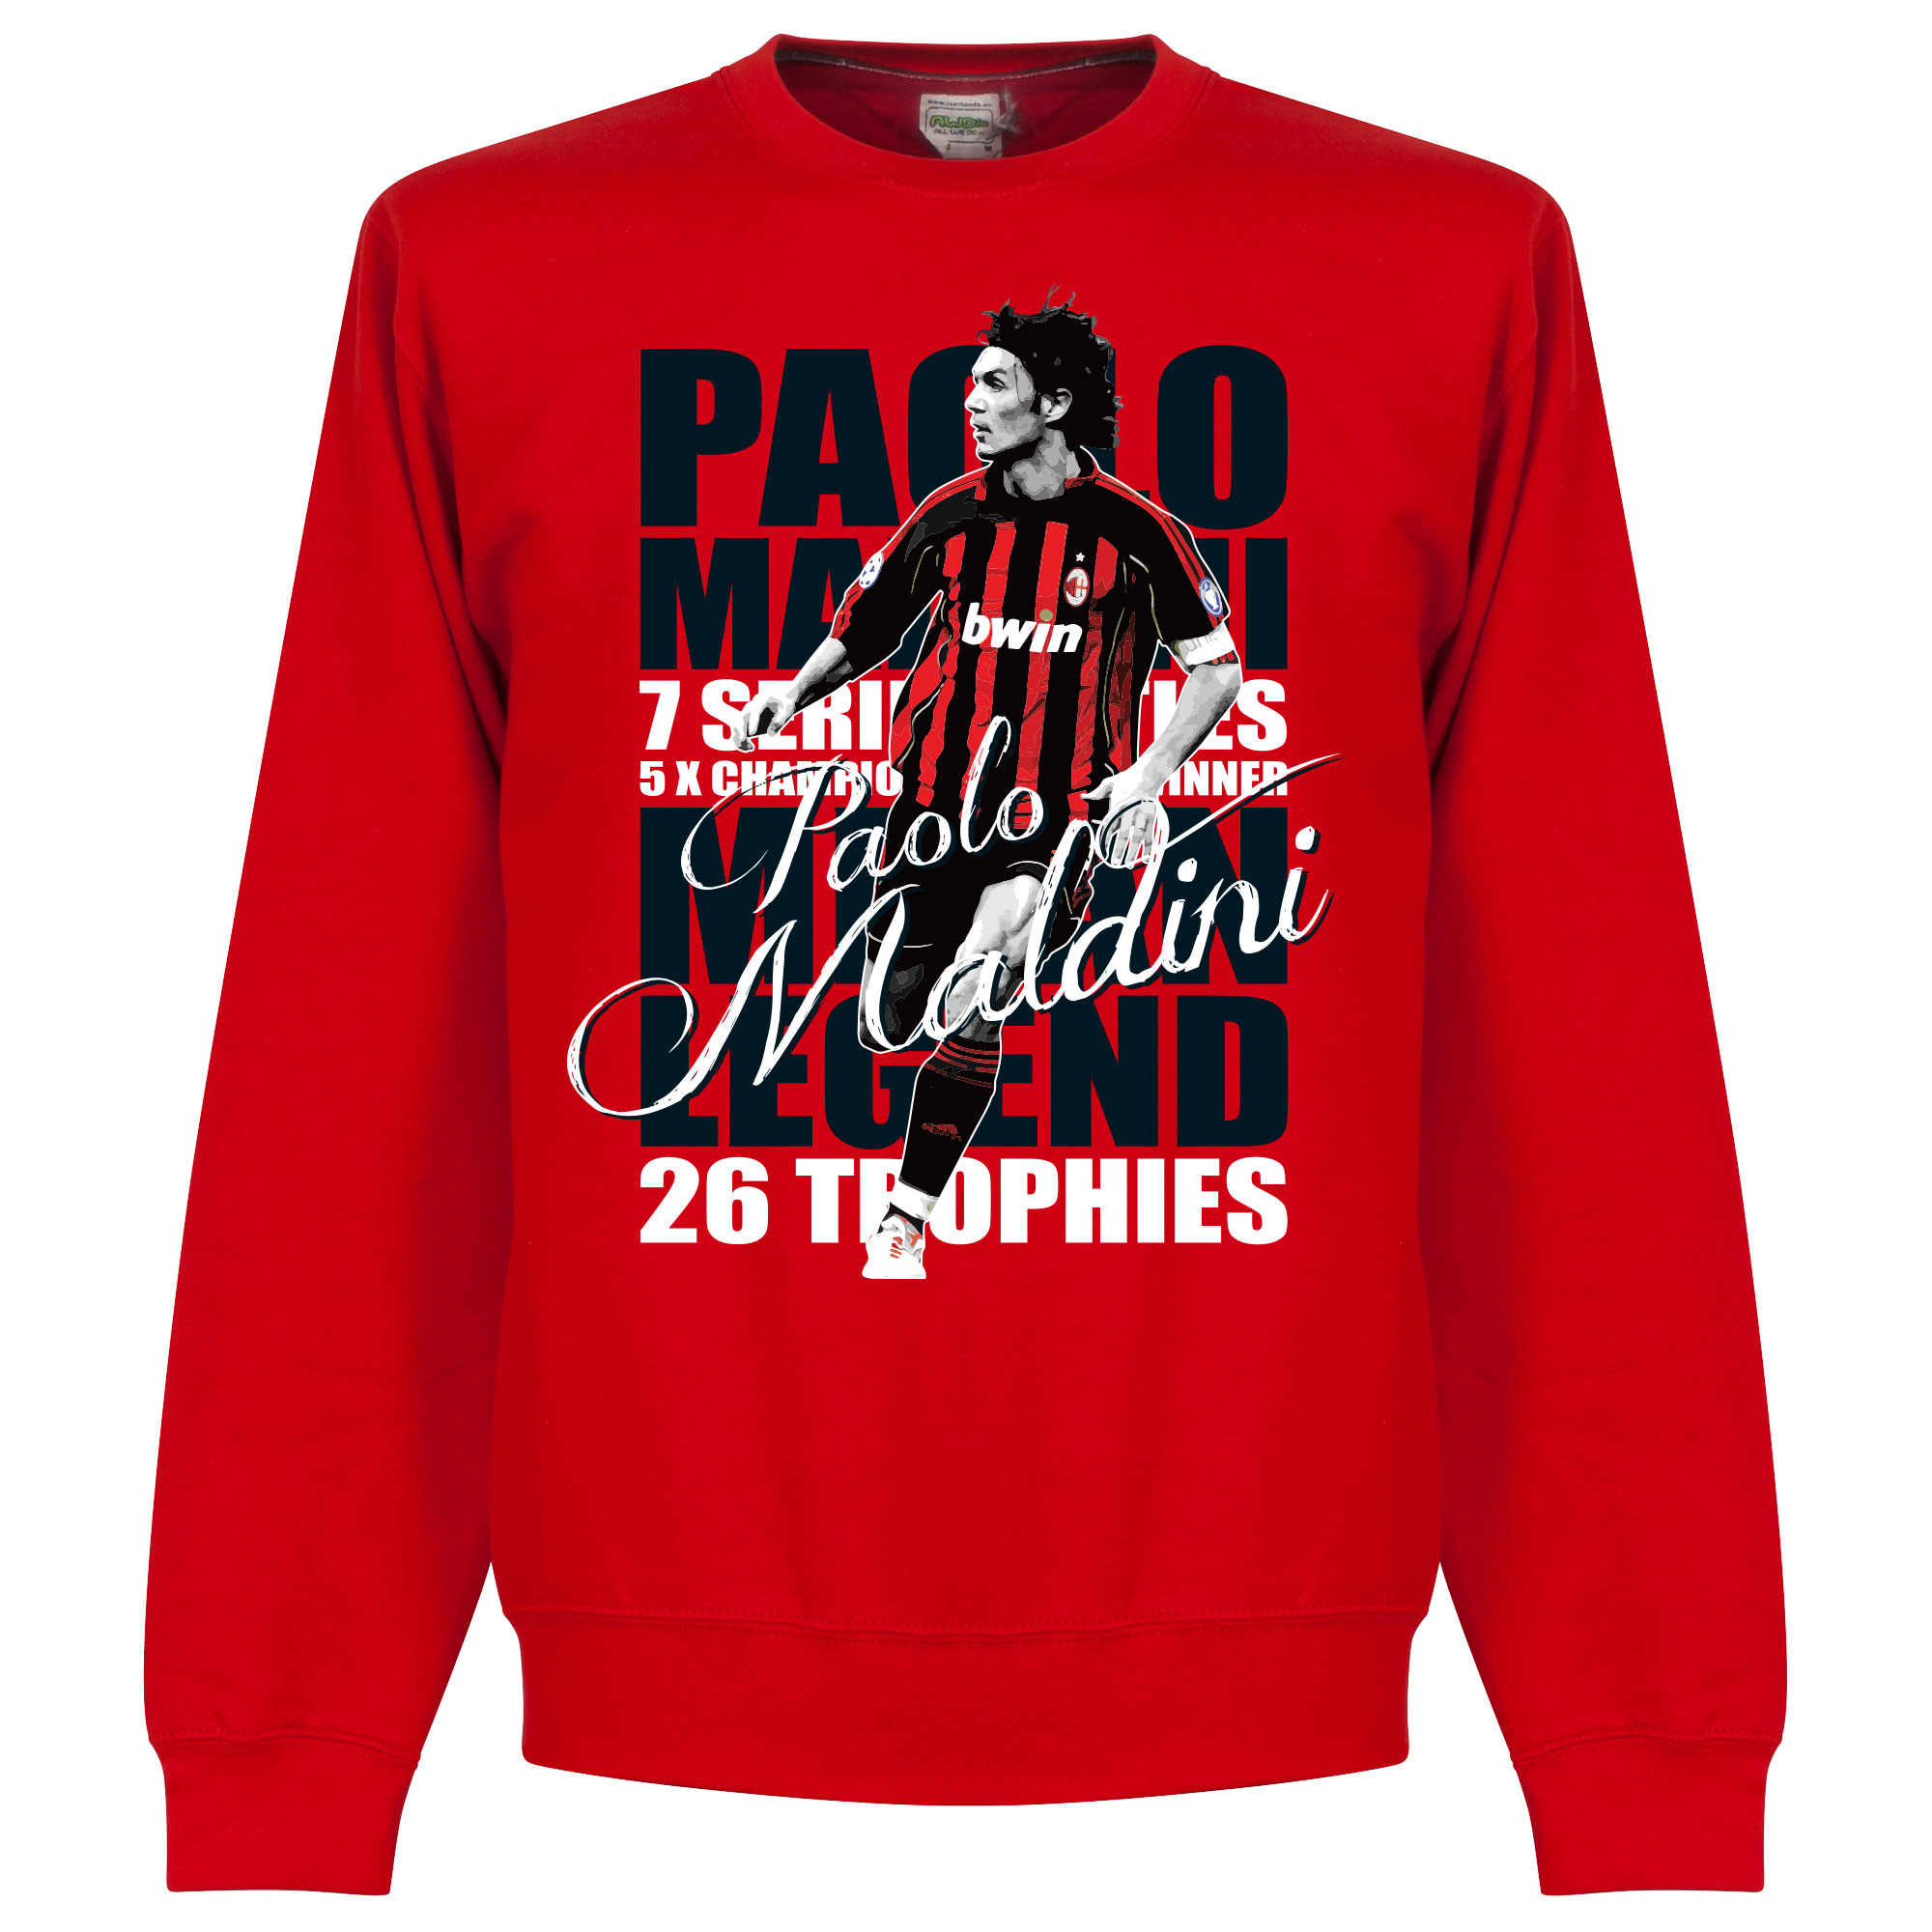 Paolo Maldini Legend Sweater S